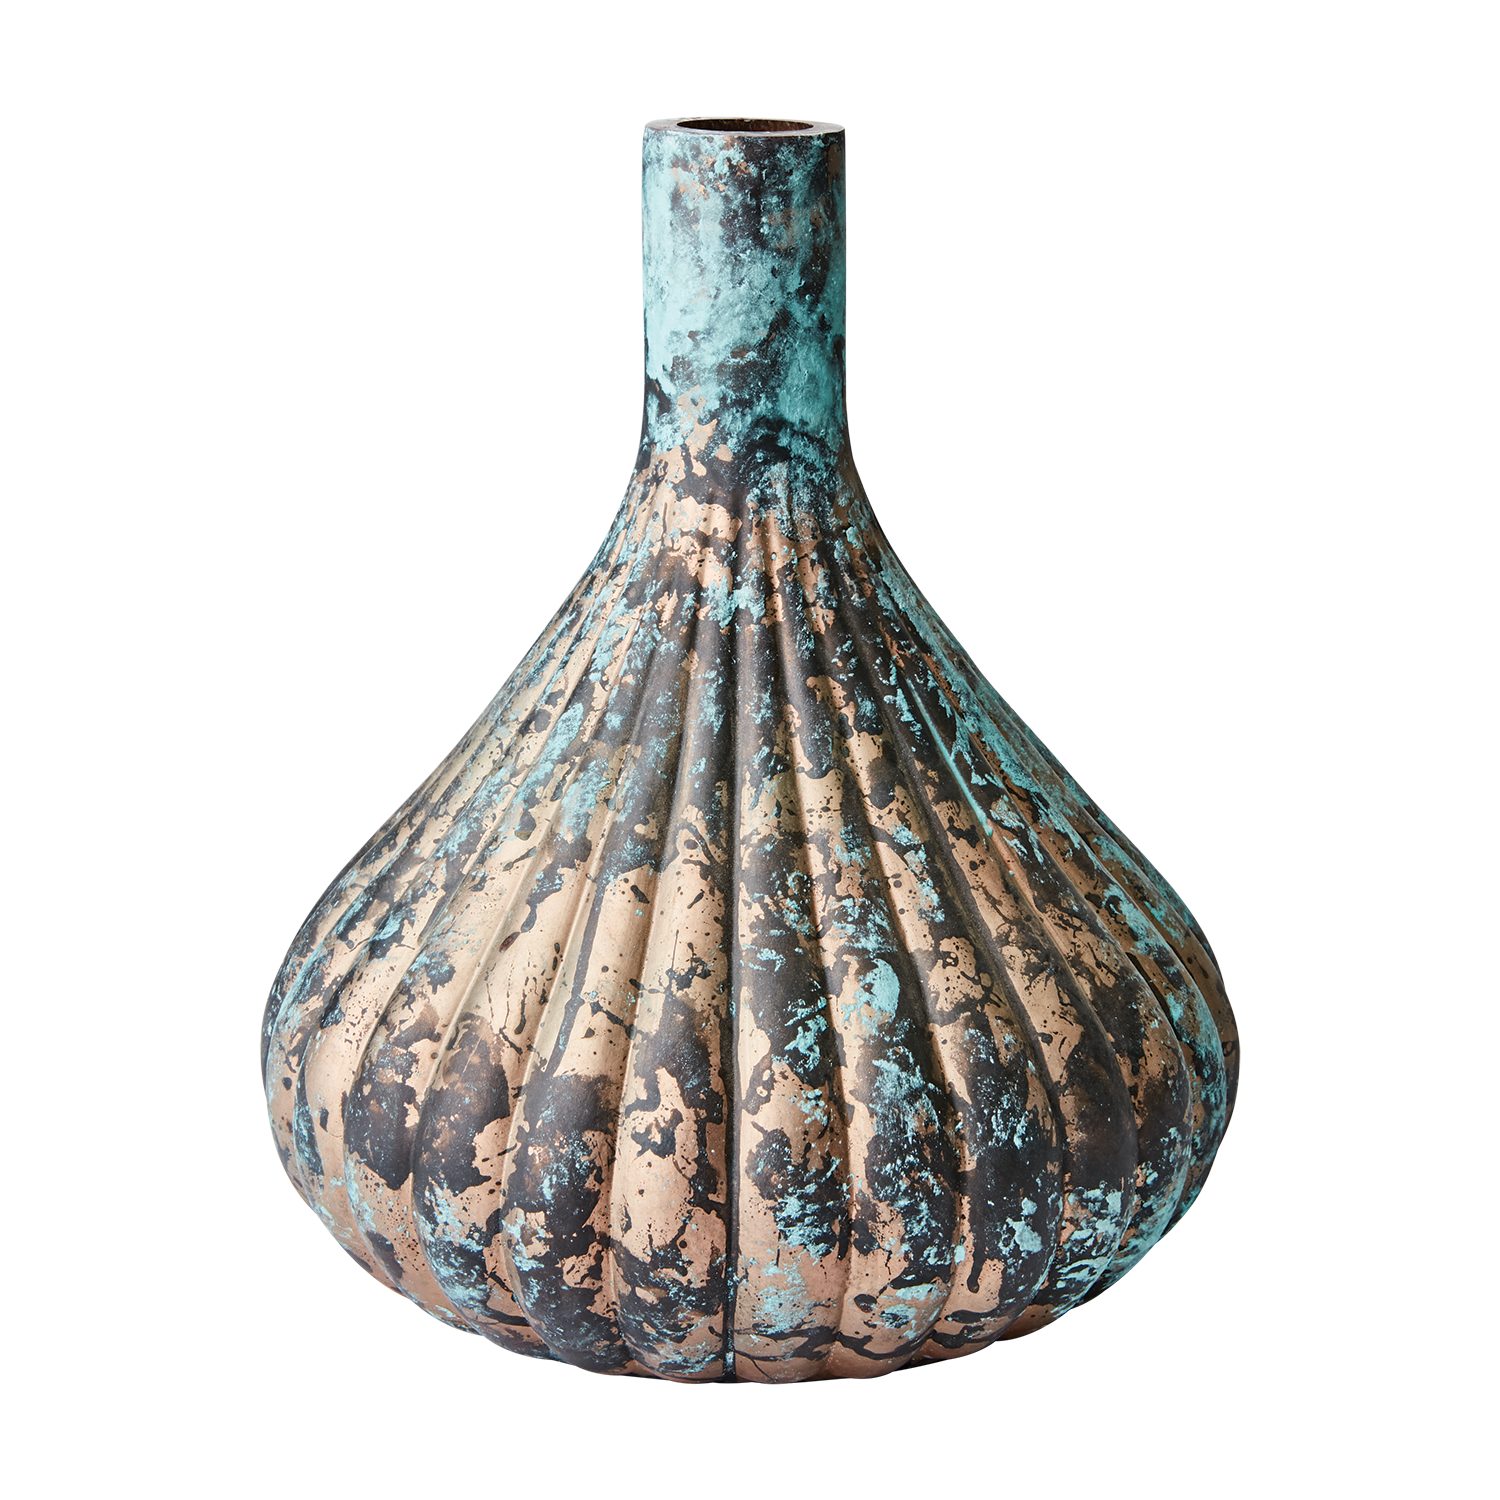 AFFARI OF SWEDEN Dekovase »Affari of Sweden MAGNOLIA Vase L Türkis/kupfer,  D26cm, Dekoration, Dekovase, Tischvase« online kaufen | OTTO